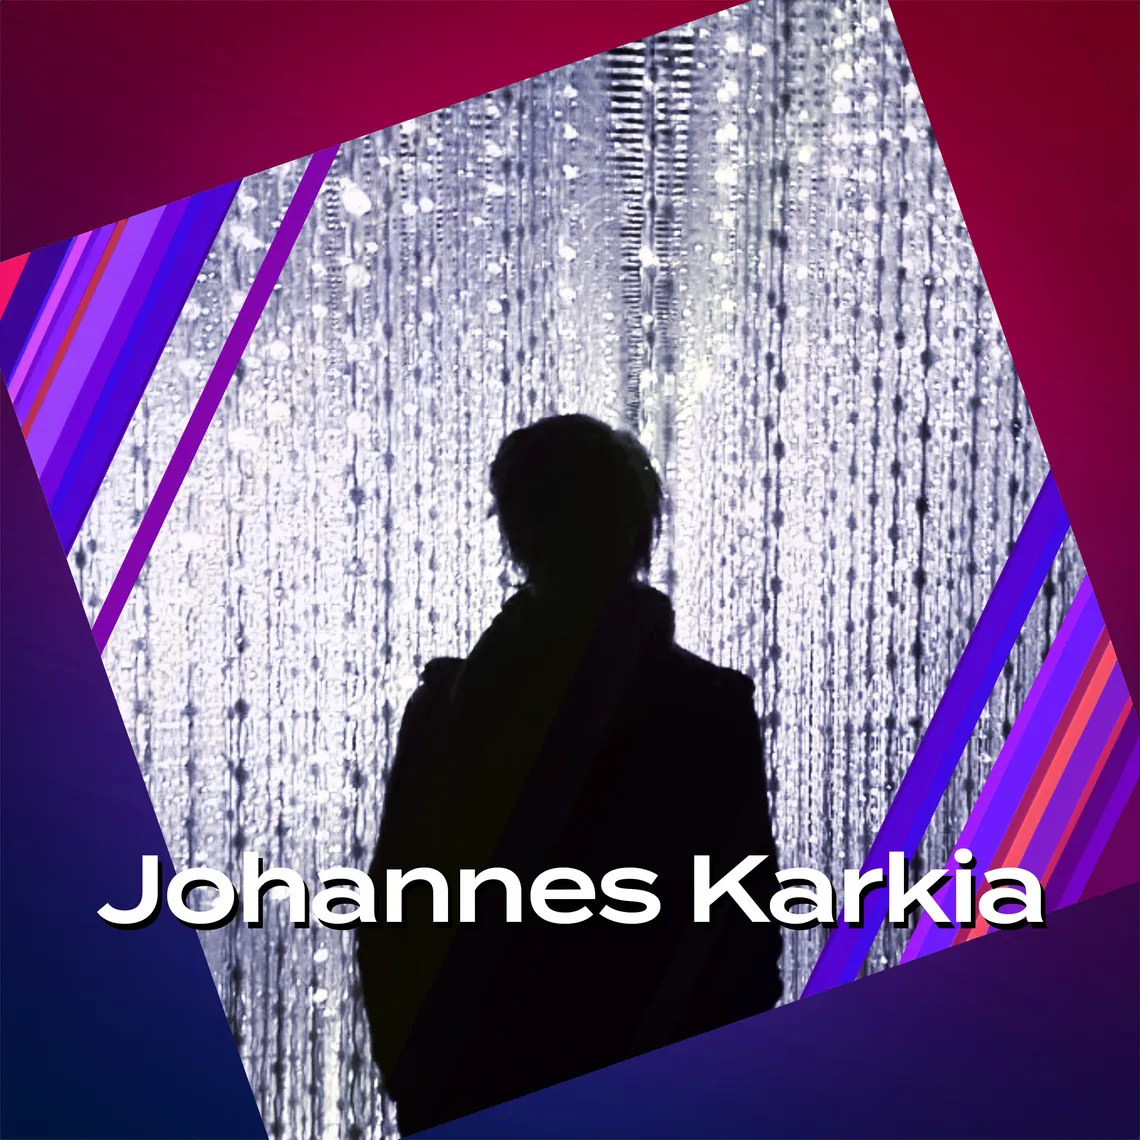 Johannes Karkia on Seismic Audio